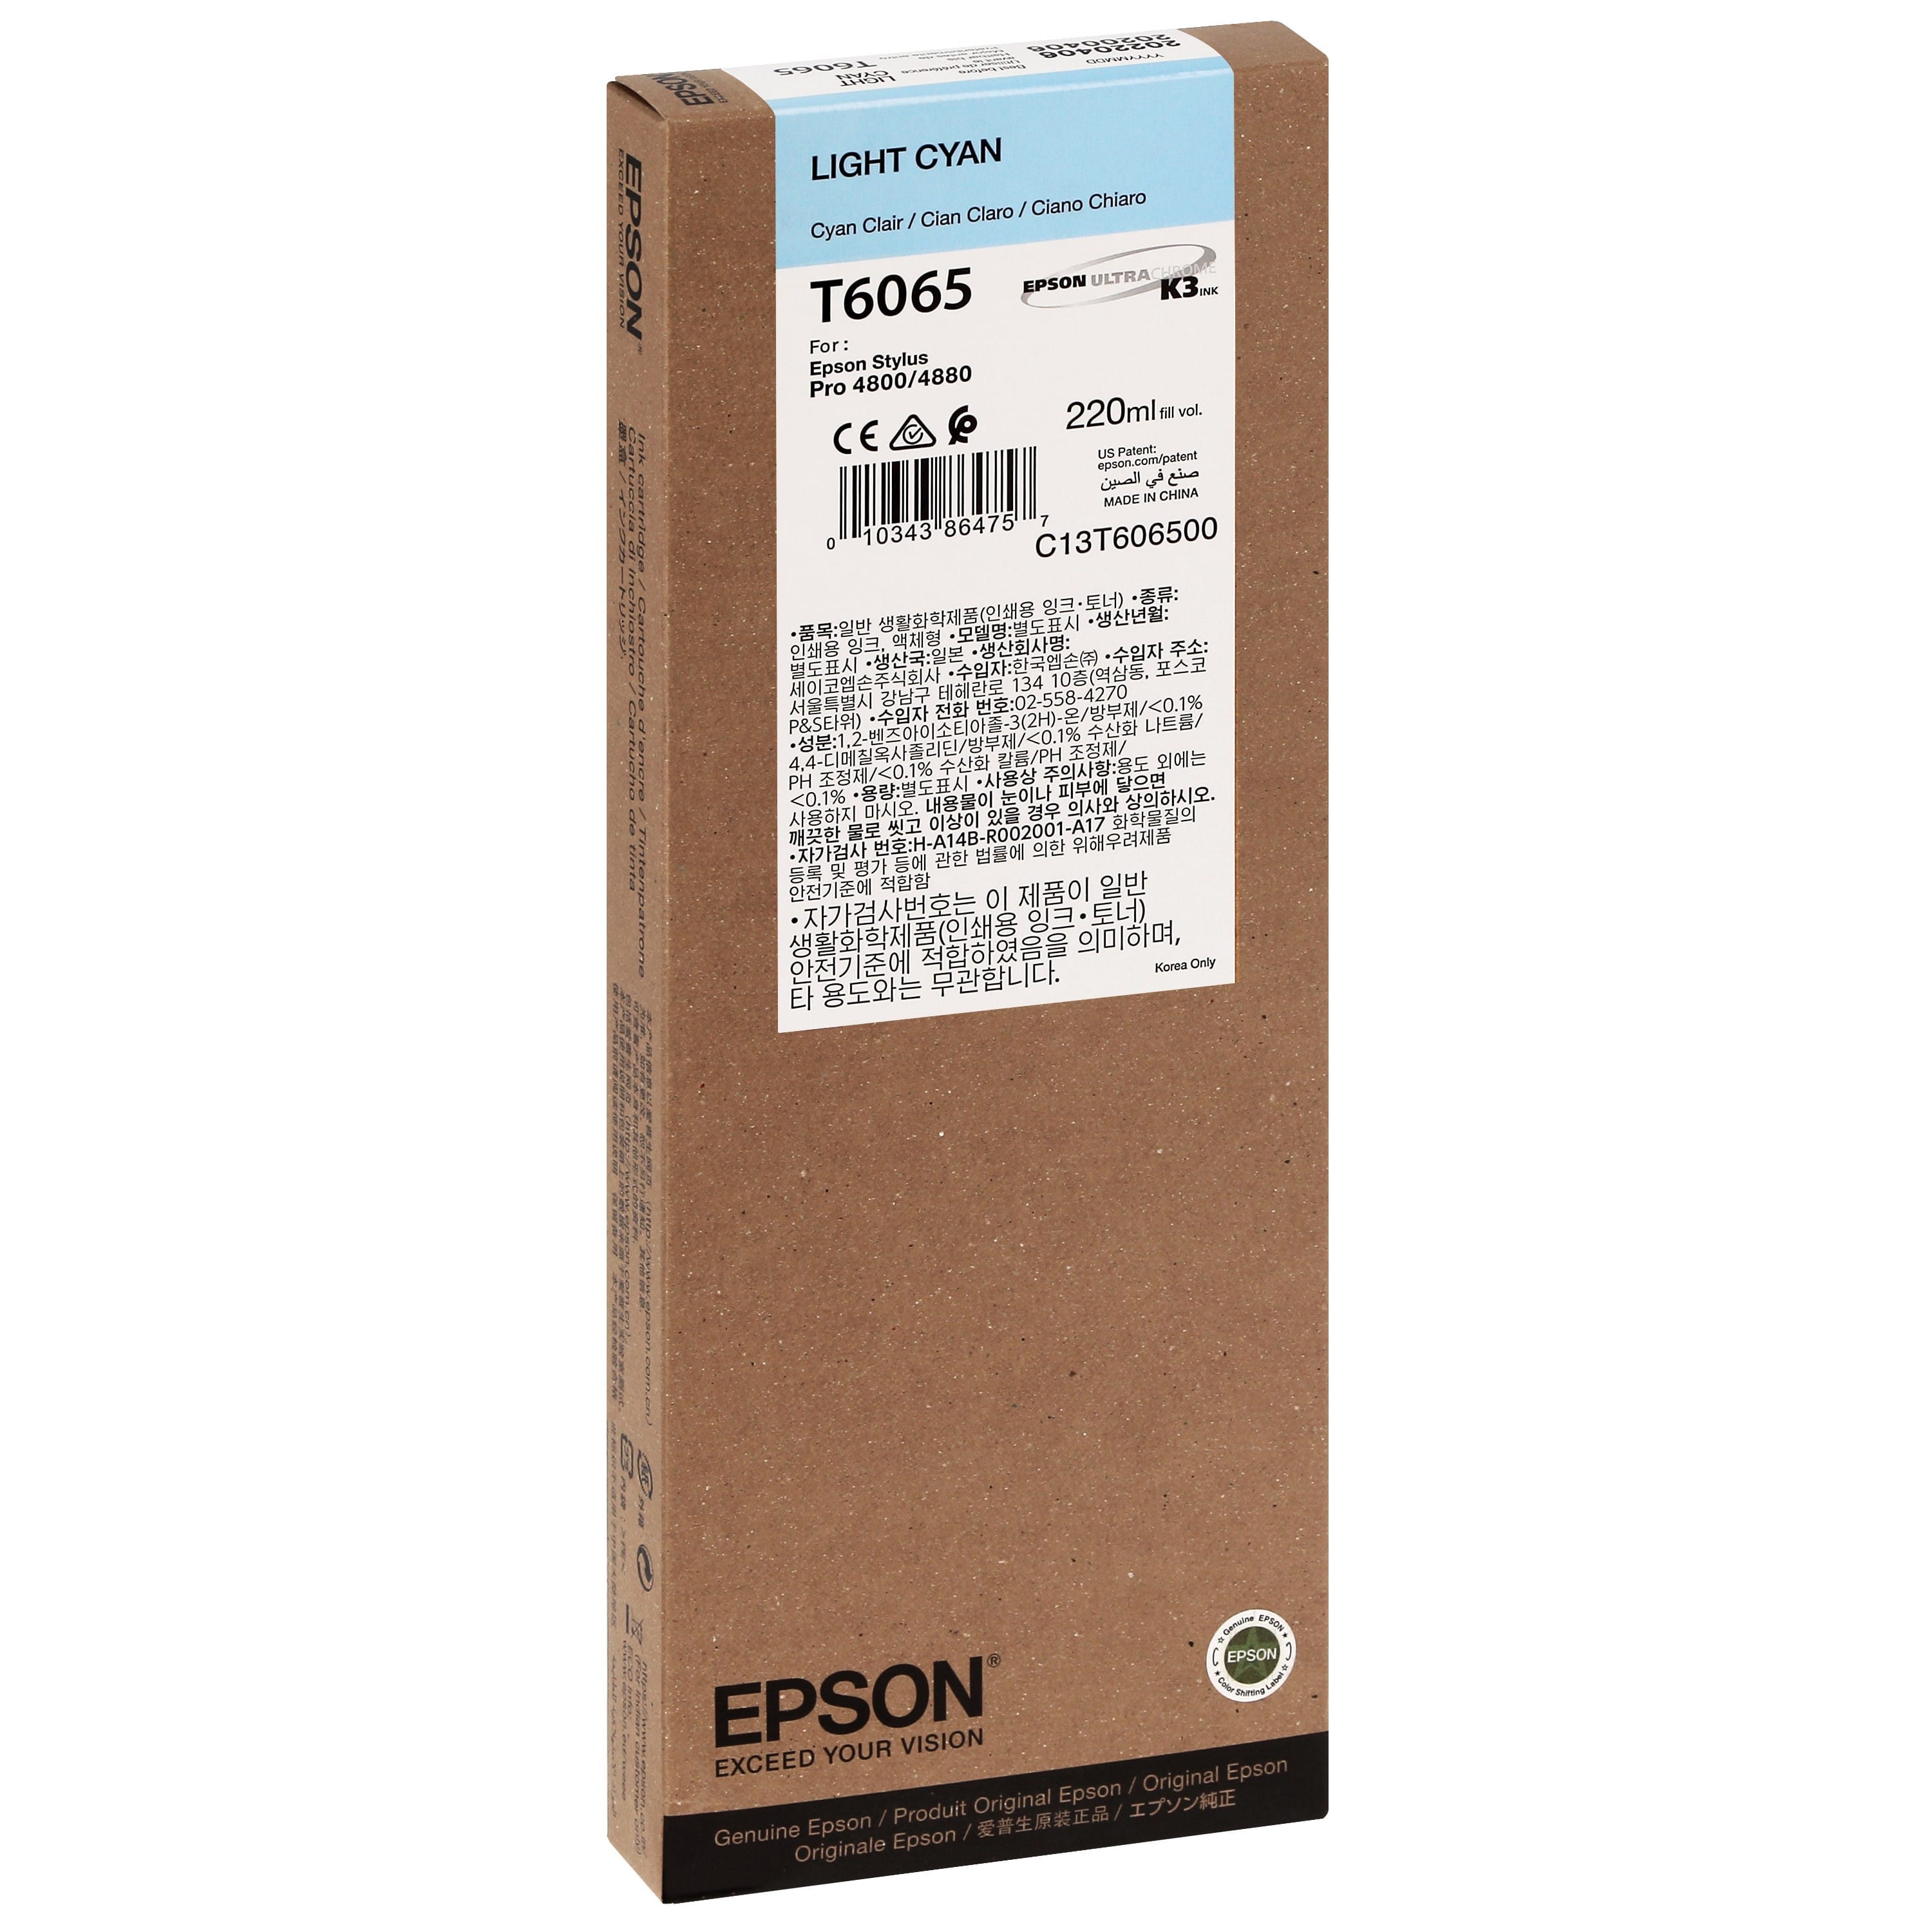 EPSON - Cartouche d'encre traceur T6065 Pour imprimante 4800/4880 Cyan clair - 220ml